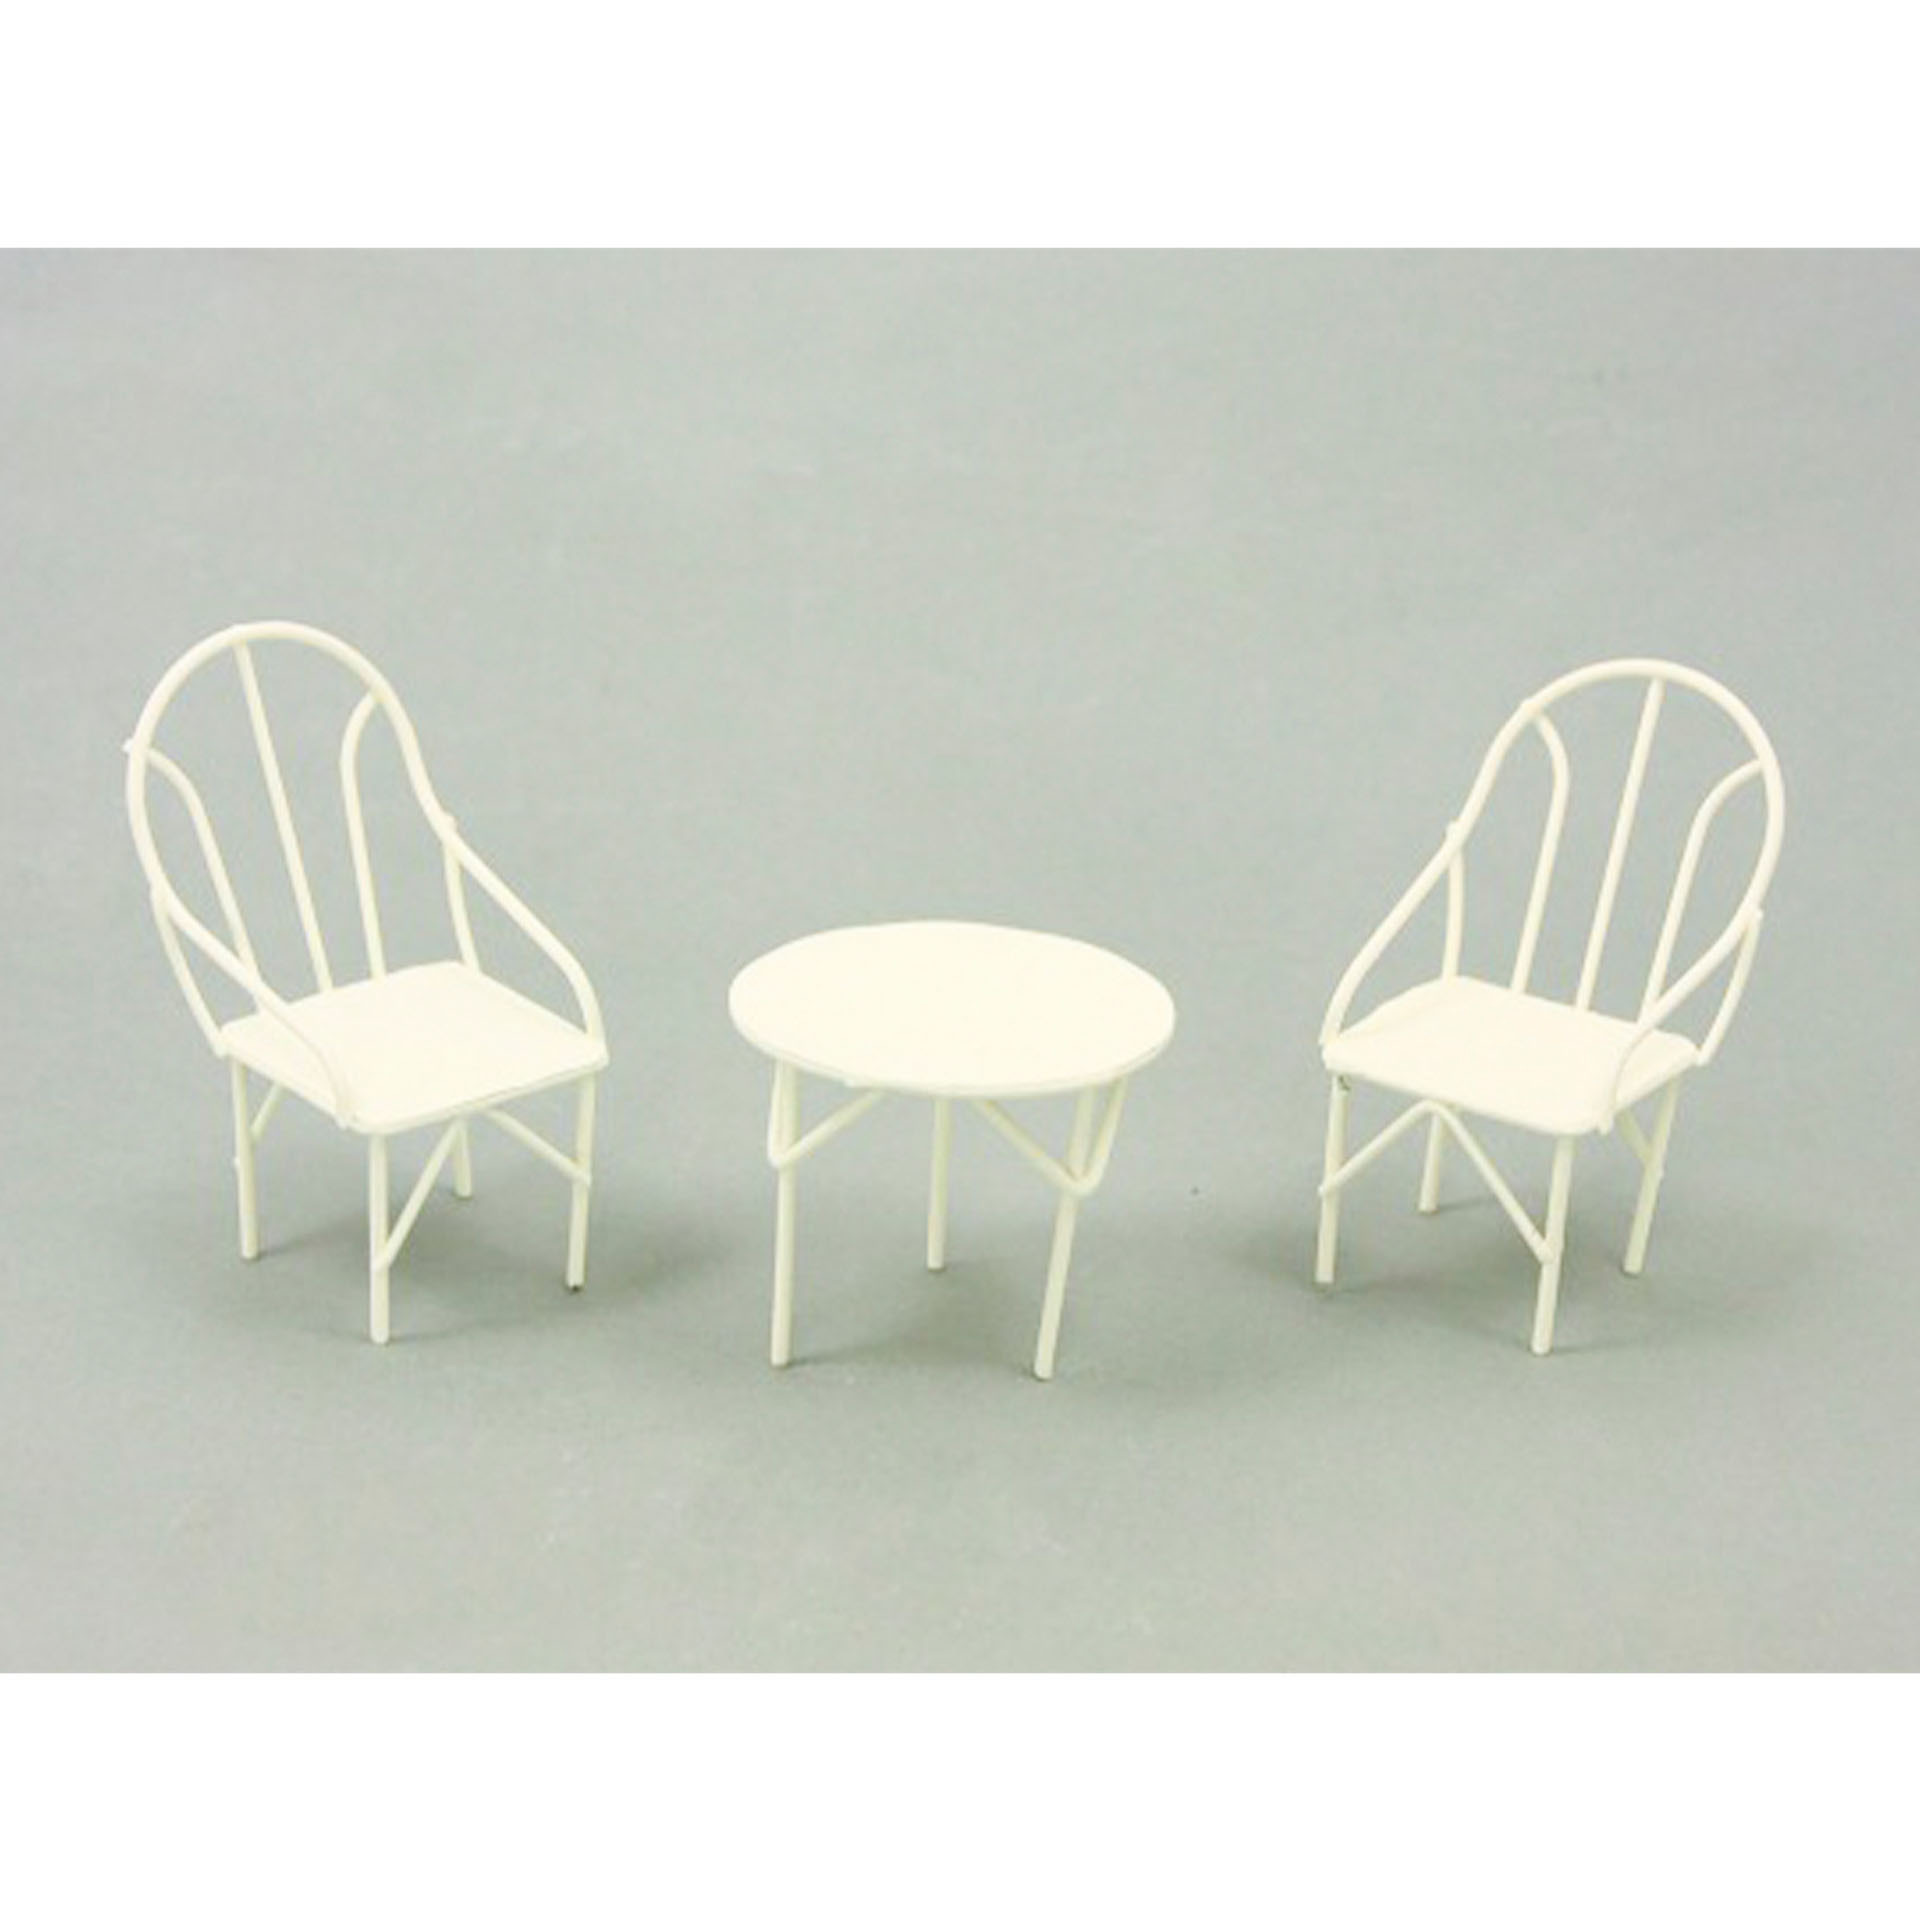 Weiße Sitzgruppe bestehend aus Tisch und zwei Stühlen für den Wichtel und den Minigarten